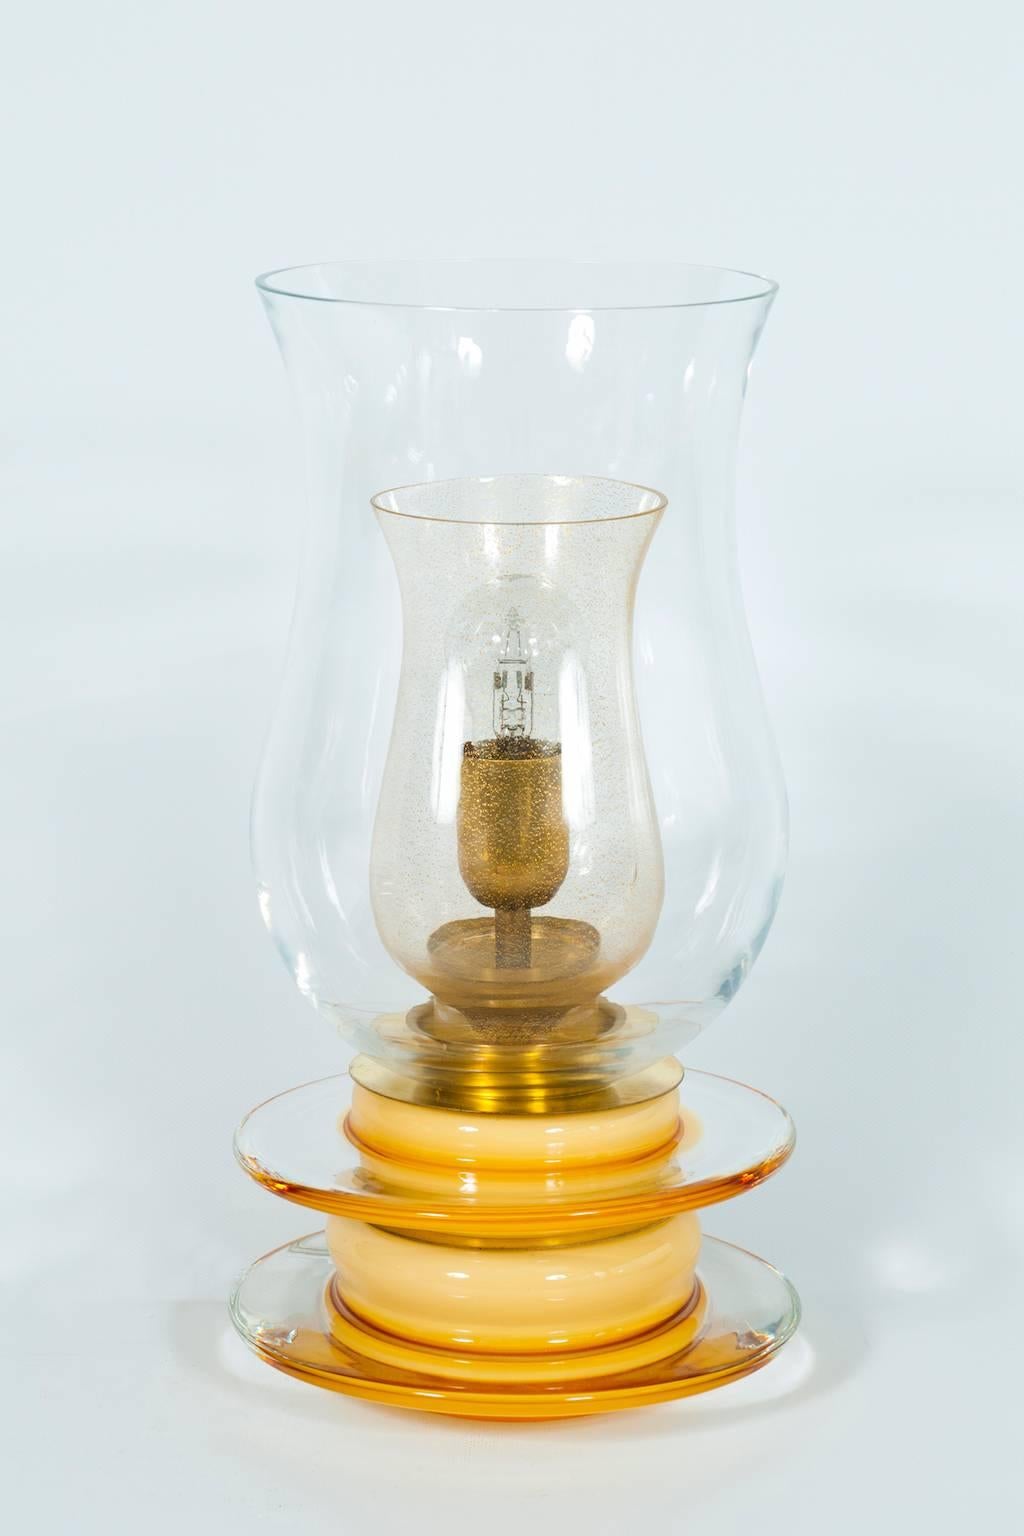 Erstaunliche und einzigartige italienische venezianische, Tischlampe, geblasenes Muranoglas, Kerzenform, in Farbe Gold & Bernstein, 1970er Jahre.
Dank der besonderen Form, die einer Kerze ähnelt, und ihrer Herstellung ist sie eine einzigartige